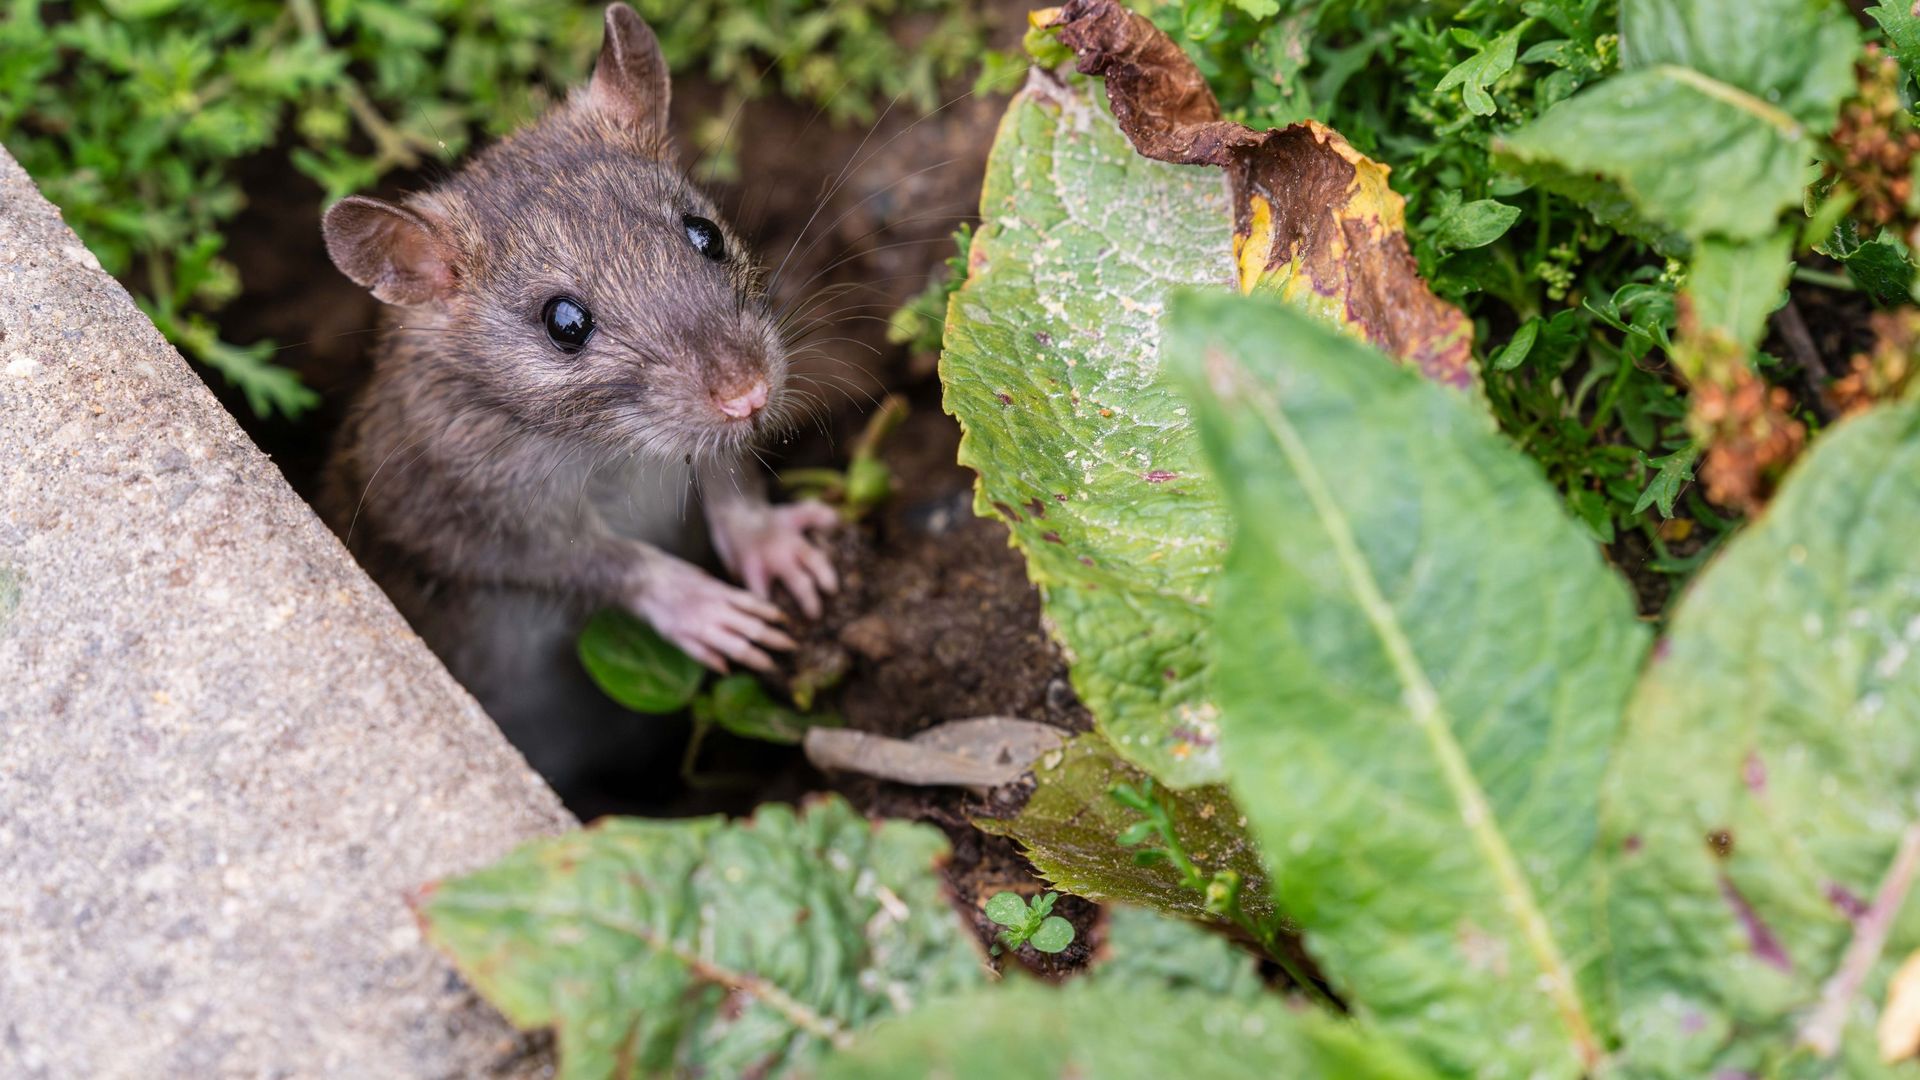 LIWI-Piege a glu pour rat et souris